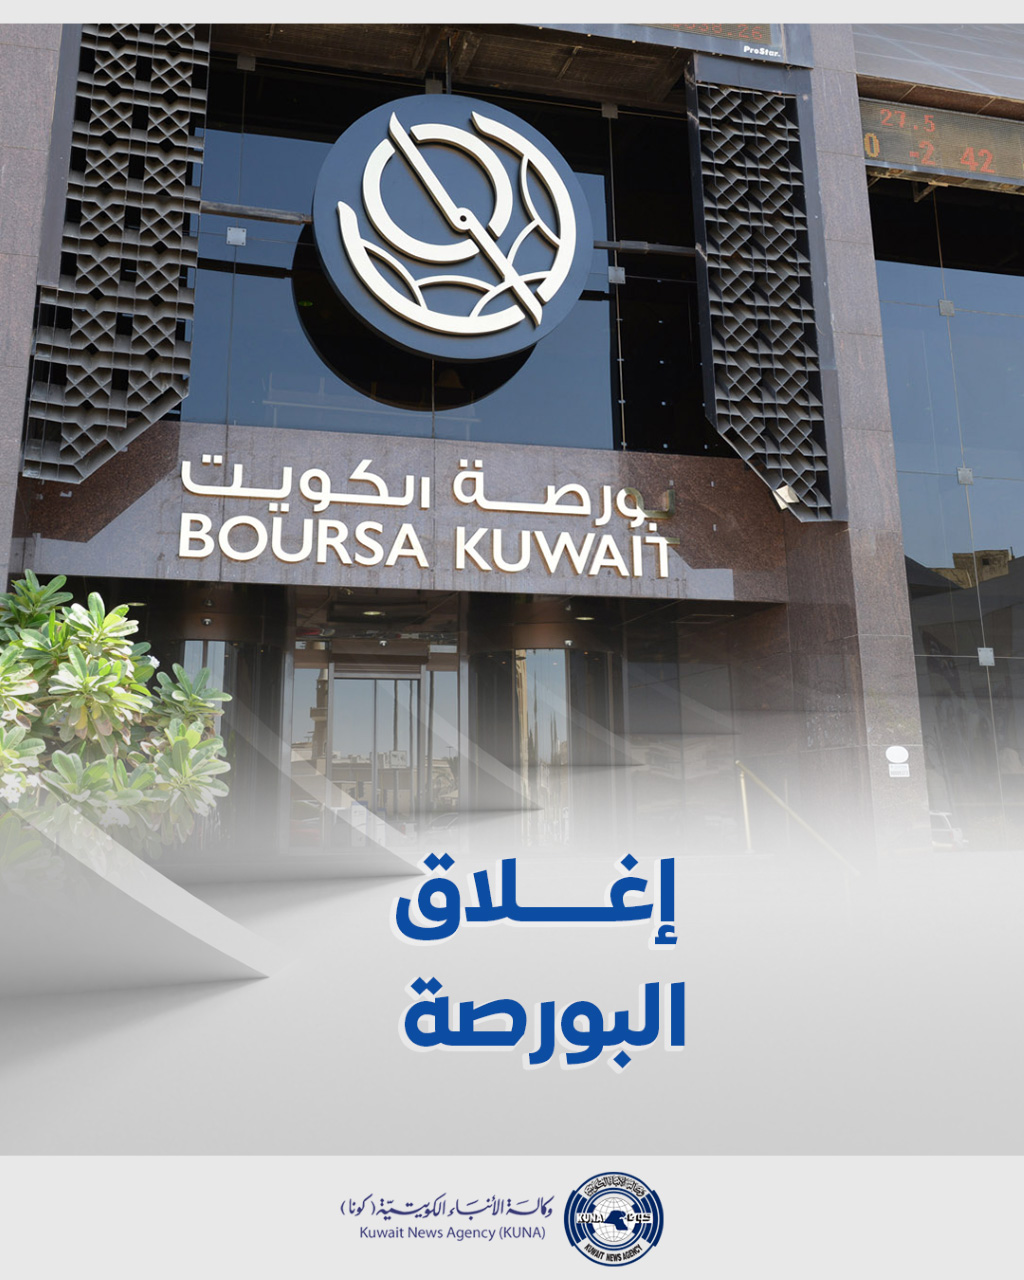 بورصة الكويت تغلق تعاملاتها على ارتفاع مؤشرها العام 35ر20 نقطة ليبلغ 26ر7277 بنسبة 28ر0 في المئة                                                                                                                                                          